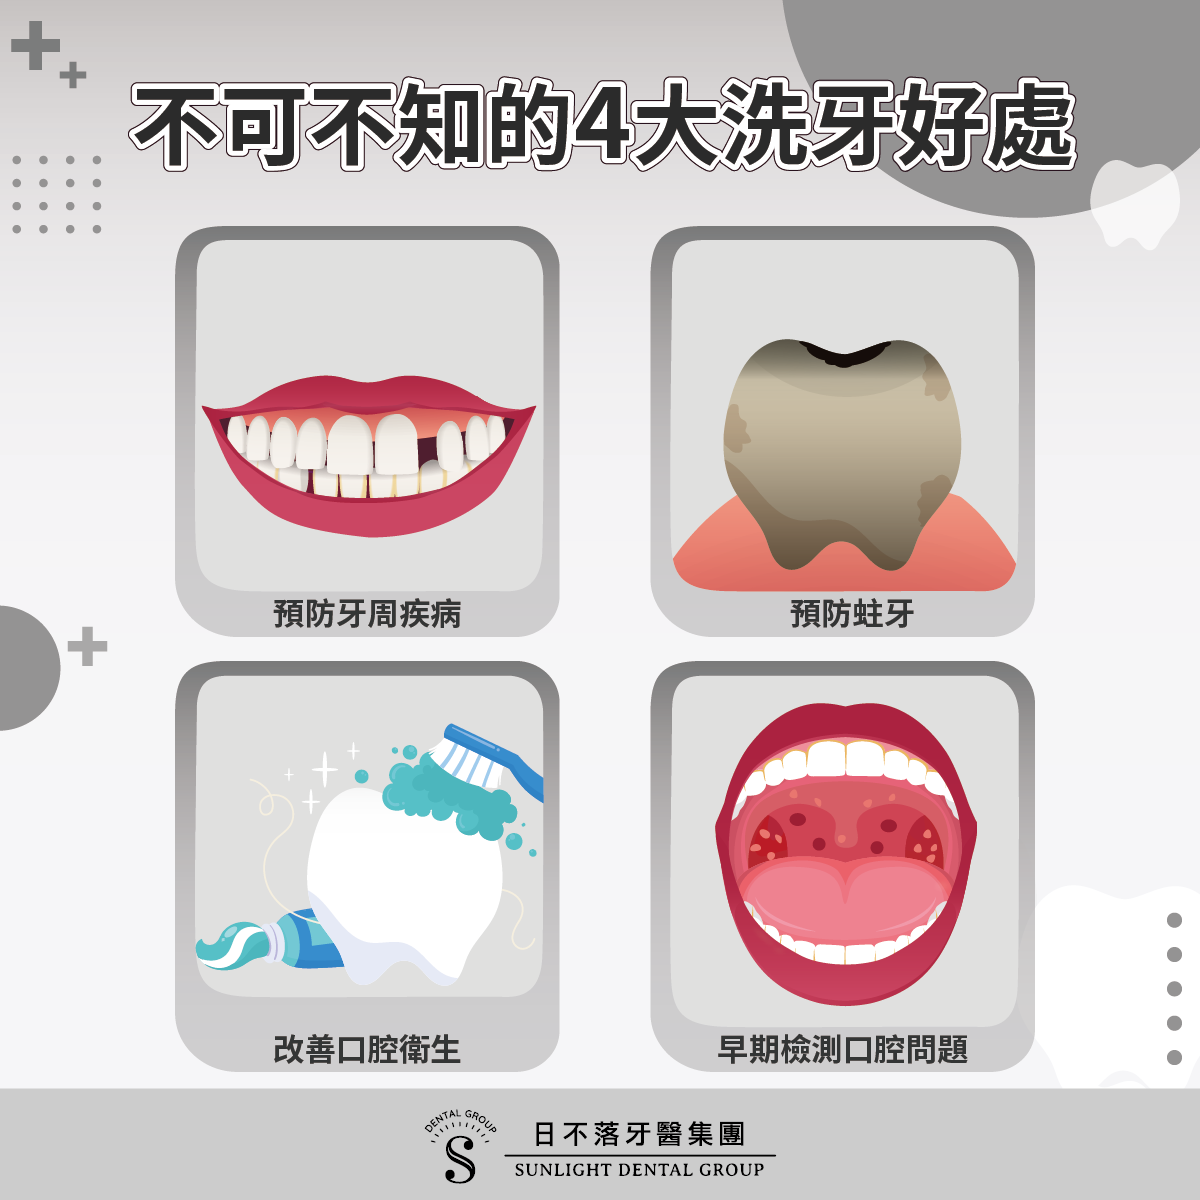 洗牙為什麼重要？洗牙多久一次正常呢？洗牙好處、頻率、常見問題、迷思一次解答！